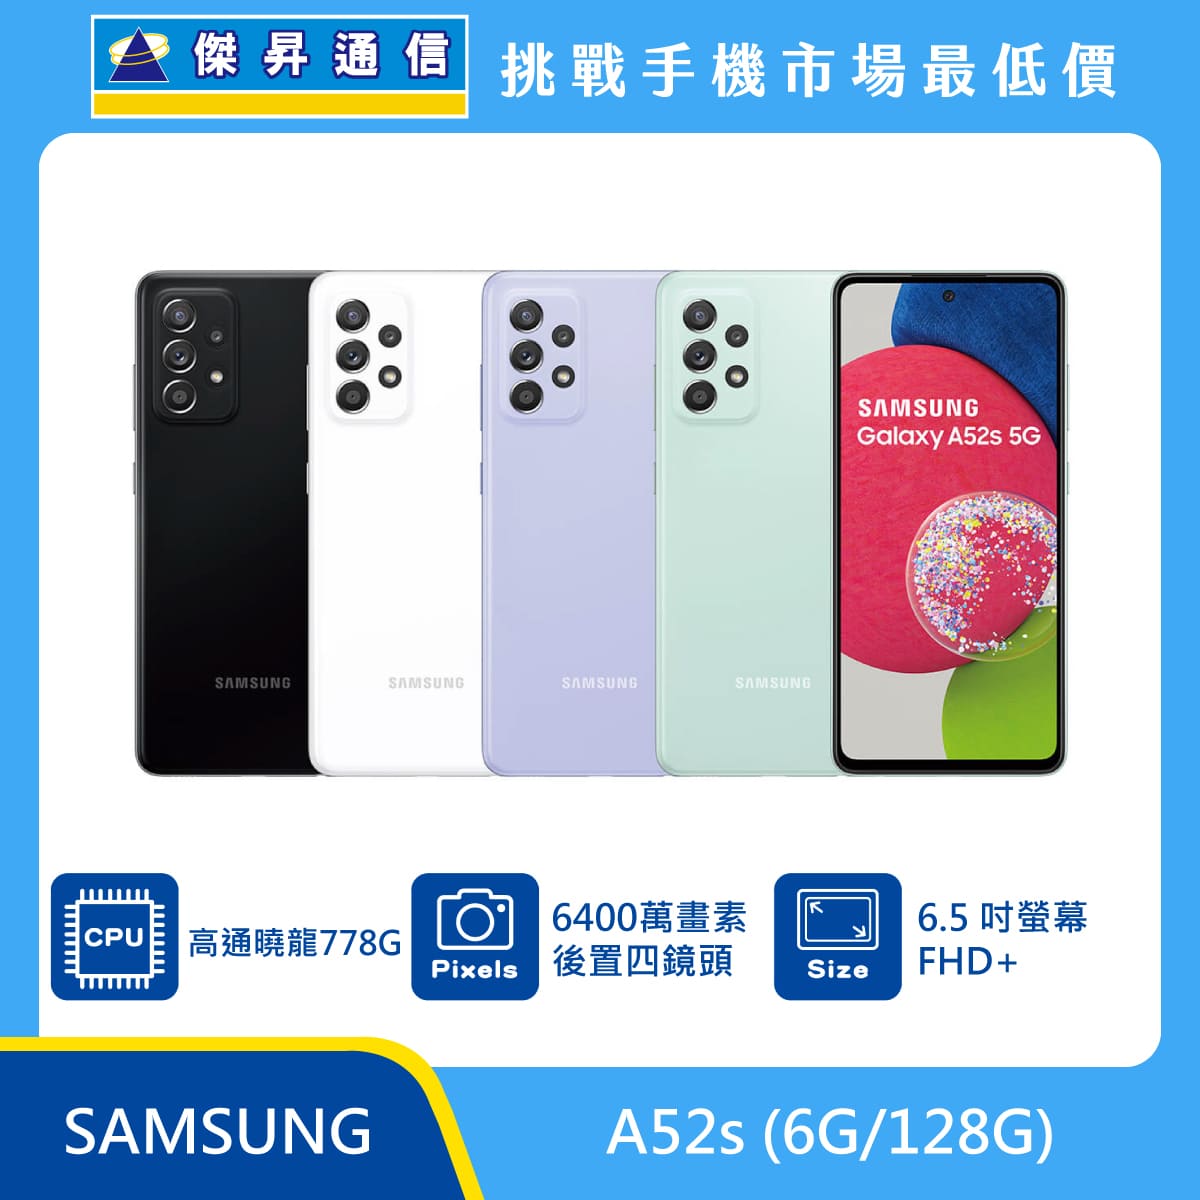 SAMSUNG A52s (6G/128G)